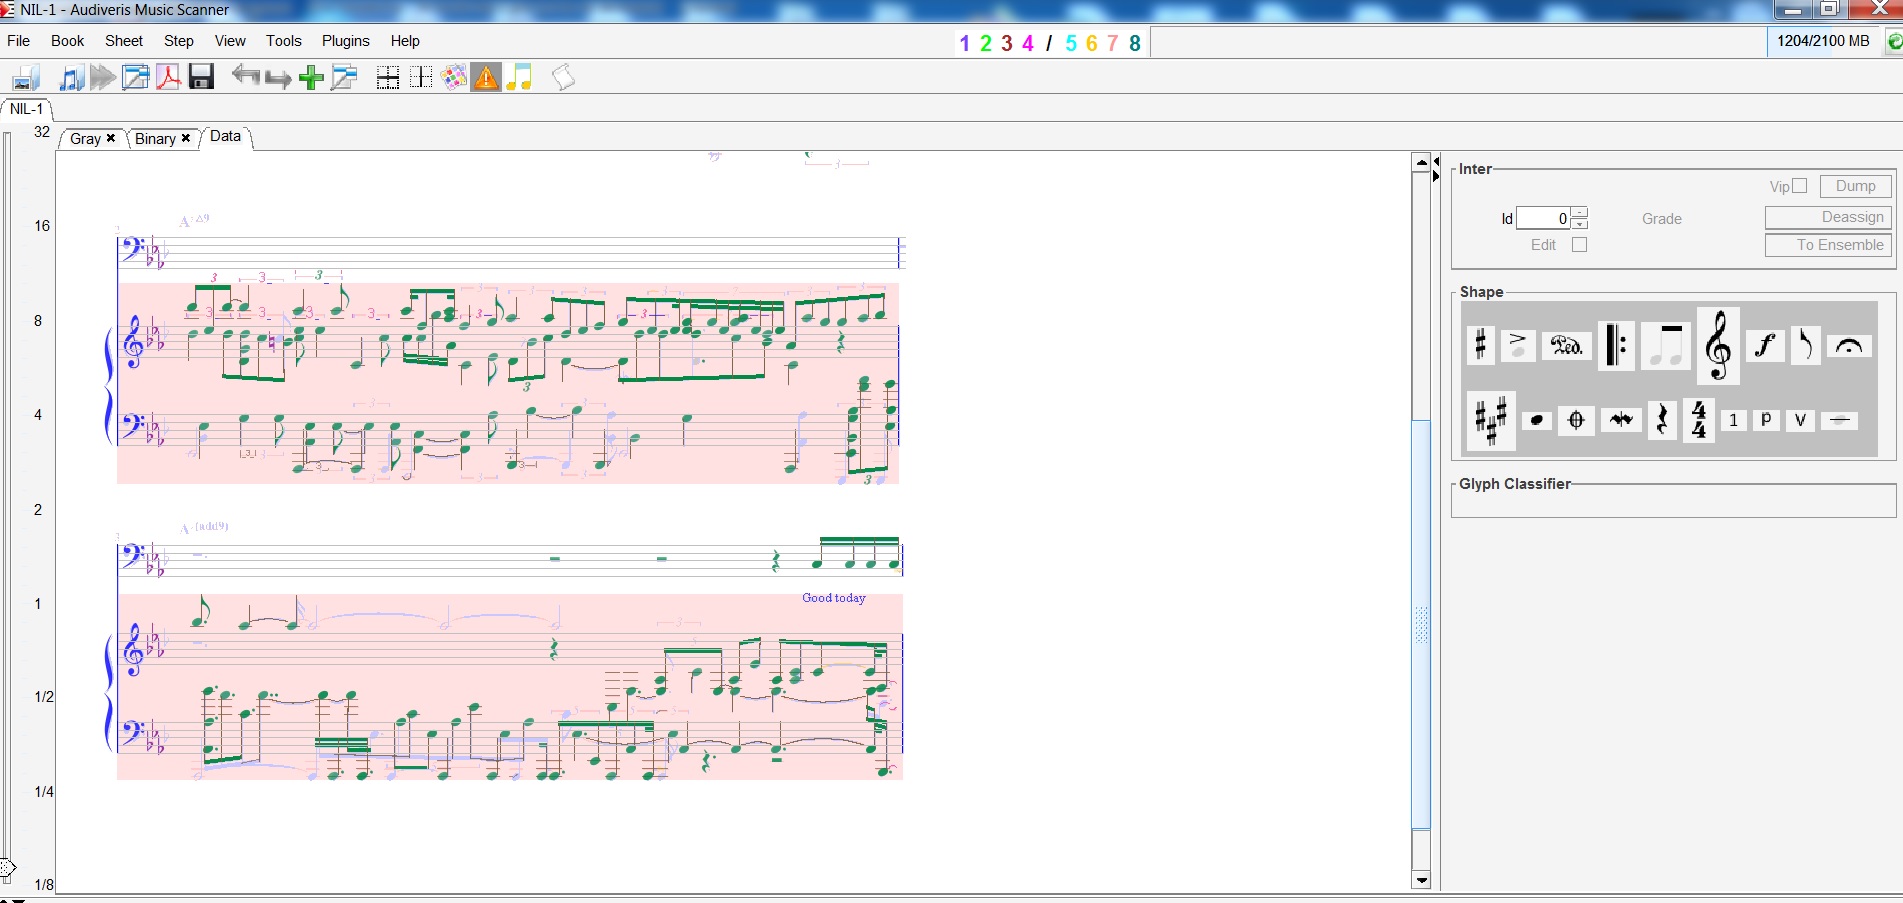 Проверка качества нотной записи сканером нот Audiveris Music Scanner. Качество достаточное для человека, для машинного анализа и редактирования, если MIDI или облако недоступно.